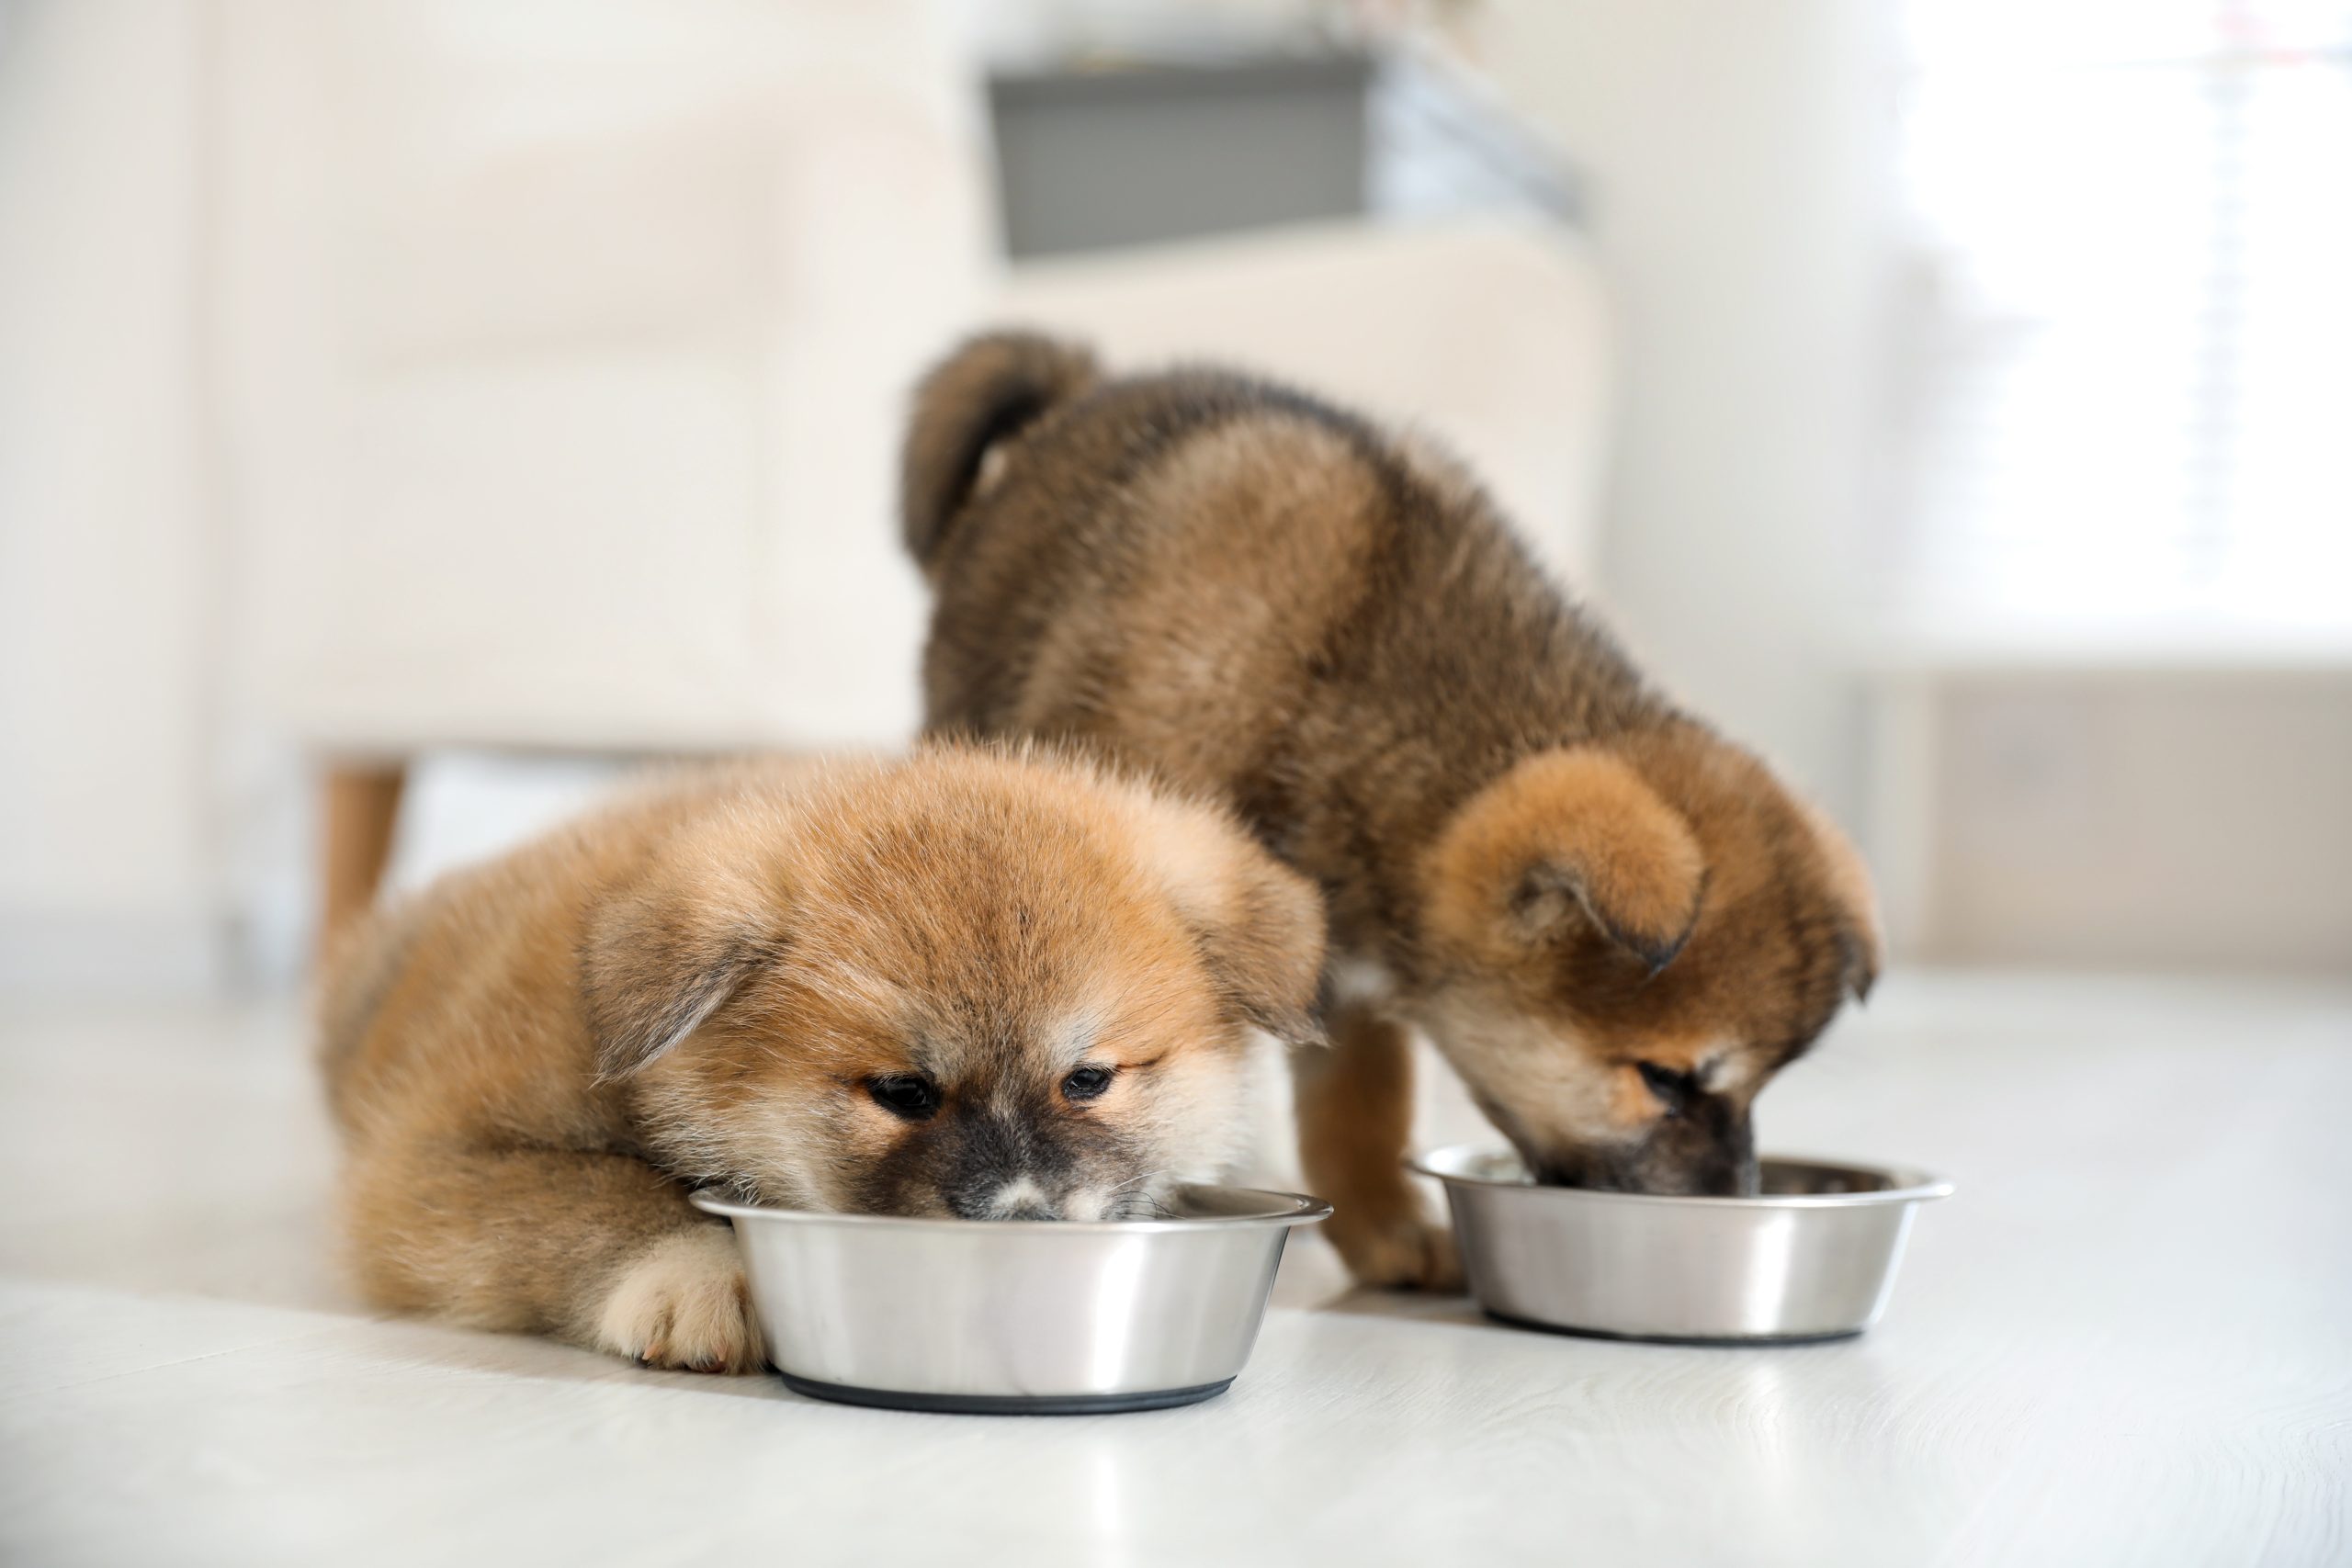 Webinar to give key advice on pet foods